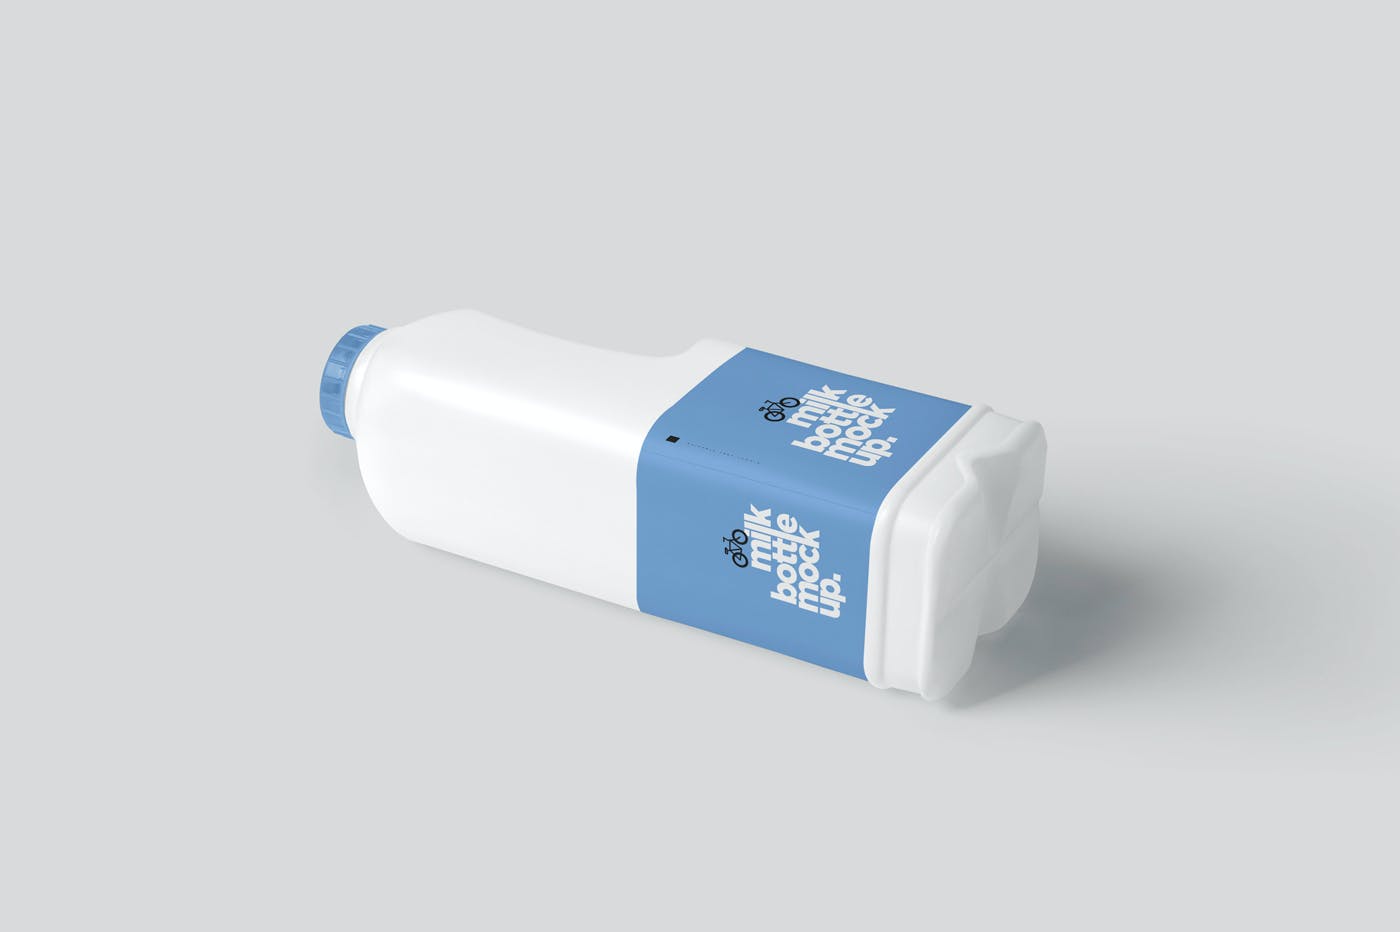 牛奶包装罐标签设计样机模板 Milk Packaging Jug Bottle Mockups设计素材模板